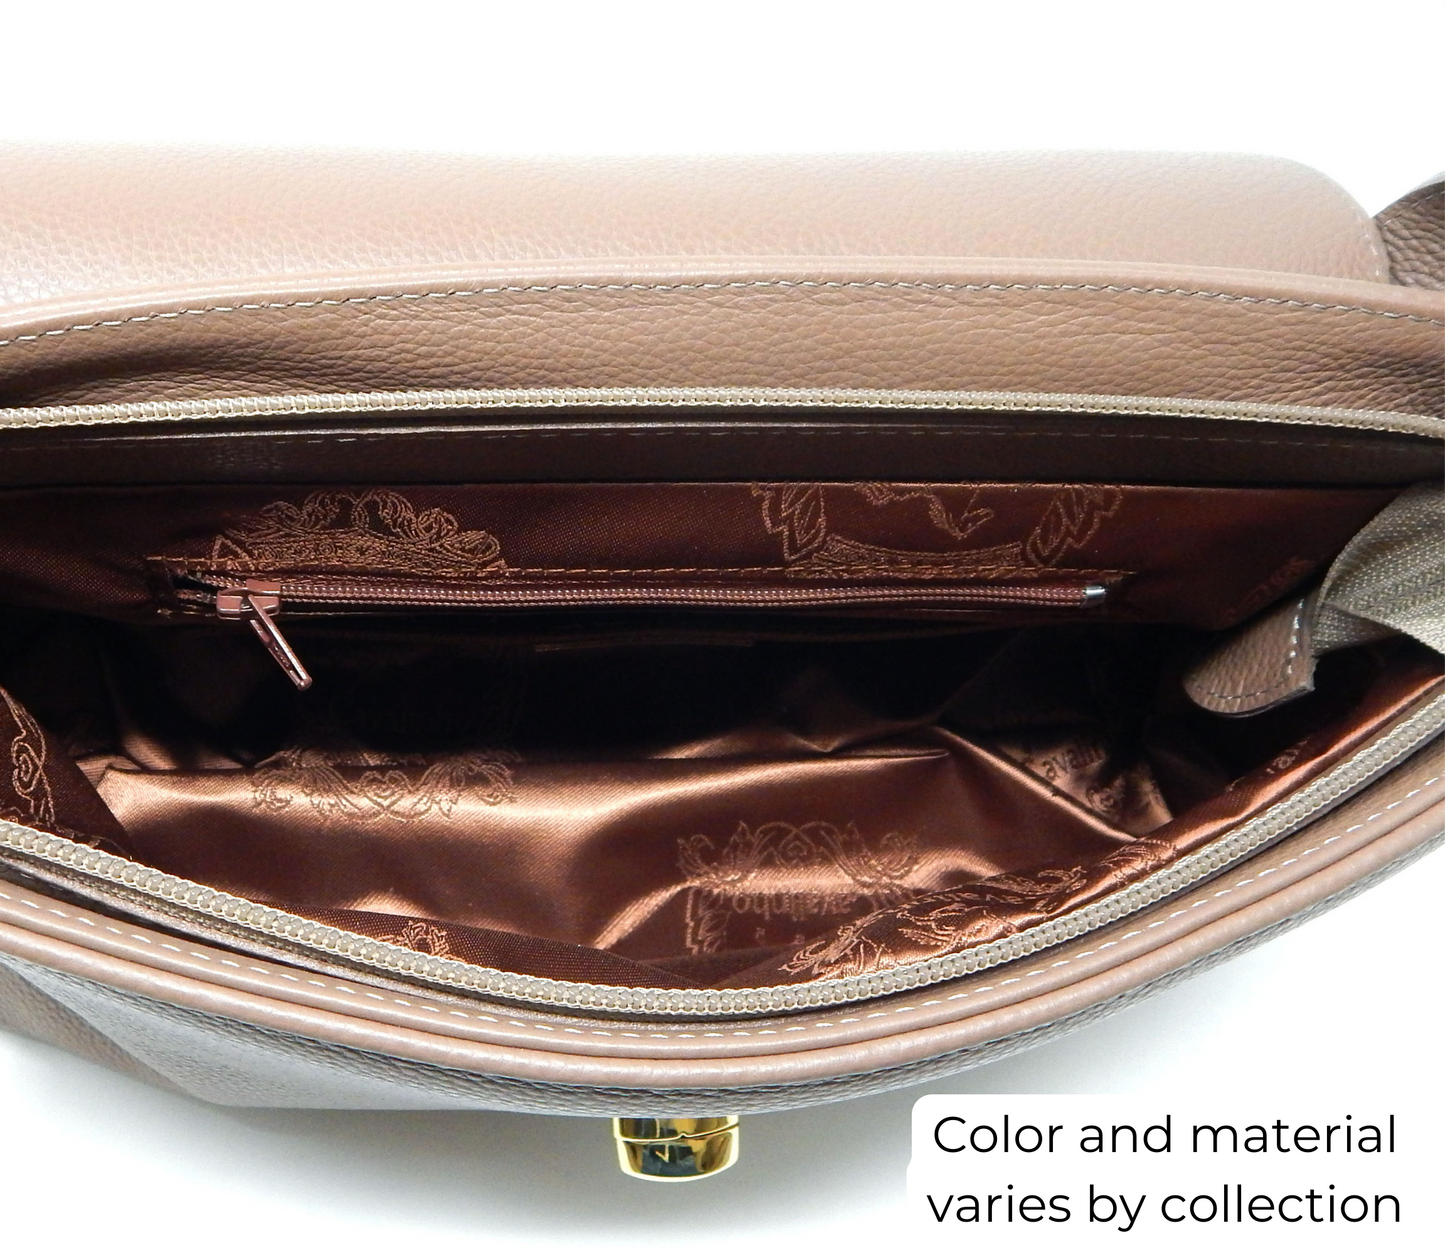 #color_ Black | Cavalinho Gallop Patent Leather Handbag - Black - inside_0514_2b7c6b40-a9d6-41e2-abf8-7e47372adbf9